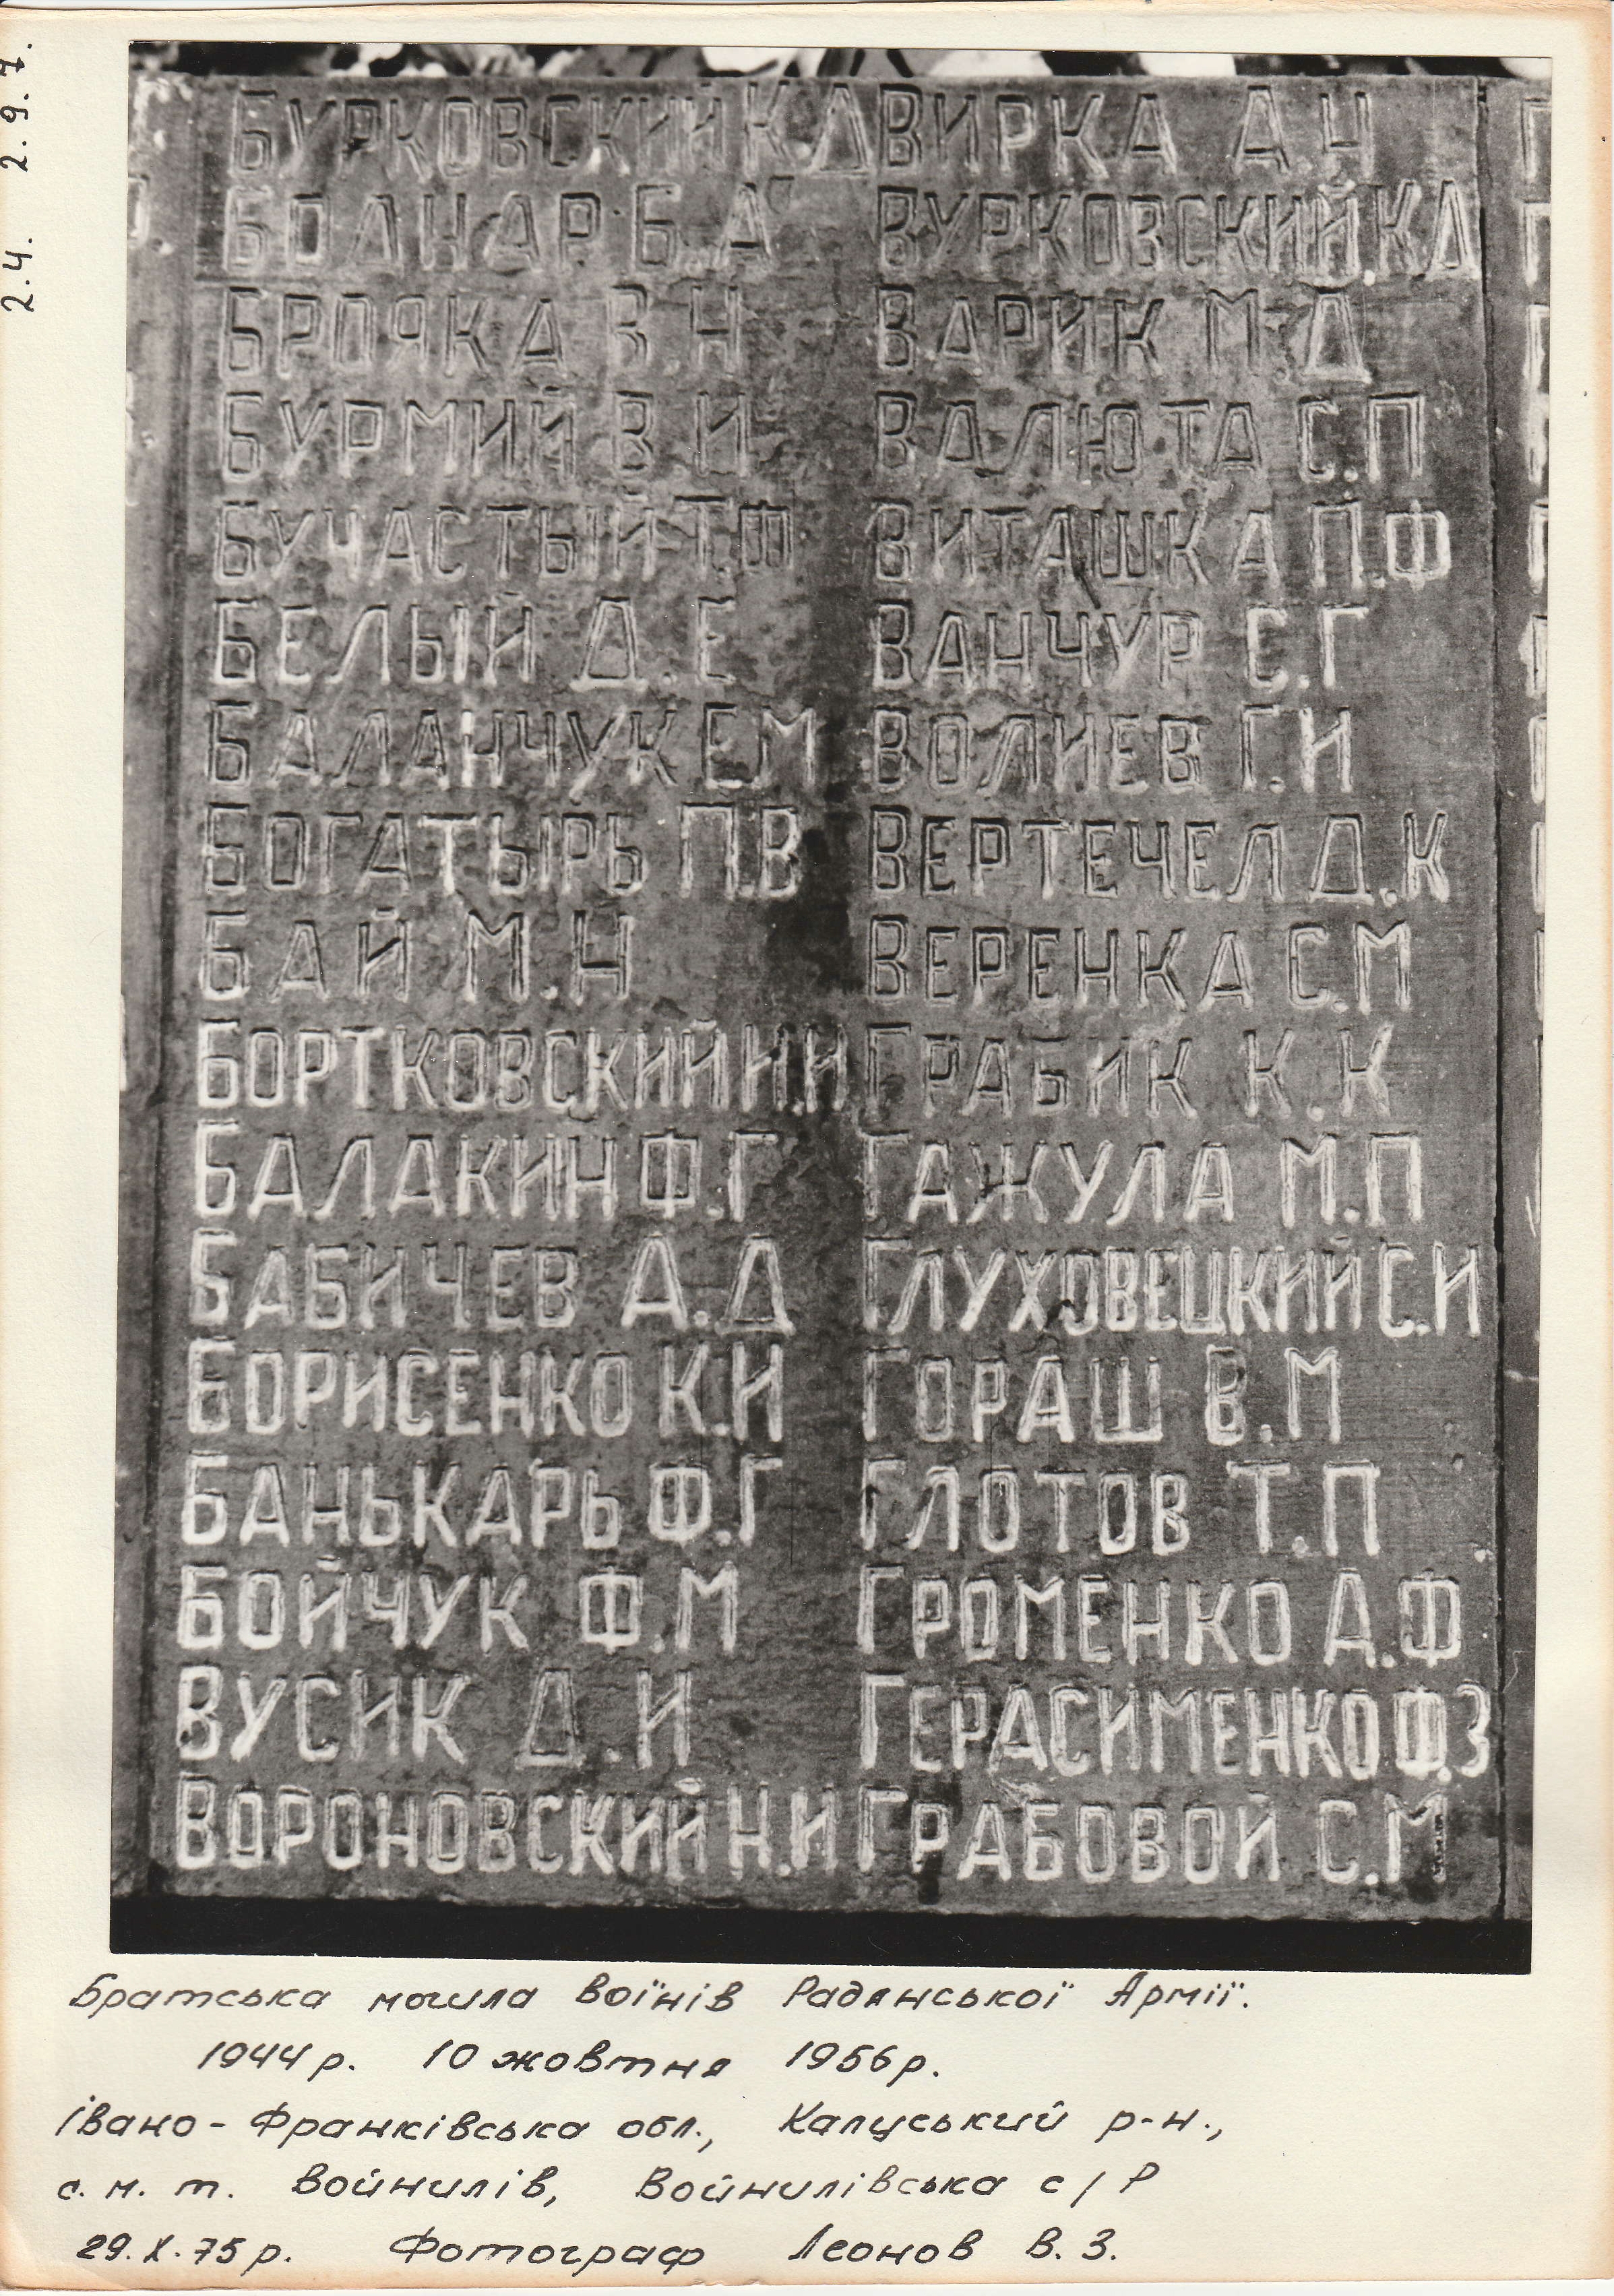 Братская могила на кладбище пгт. Войнилов Калушского района